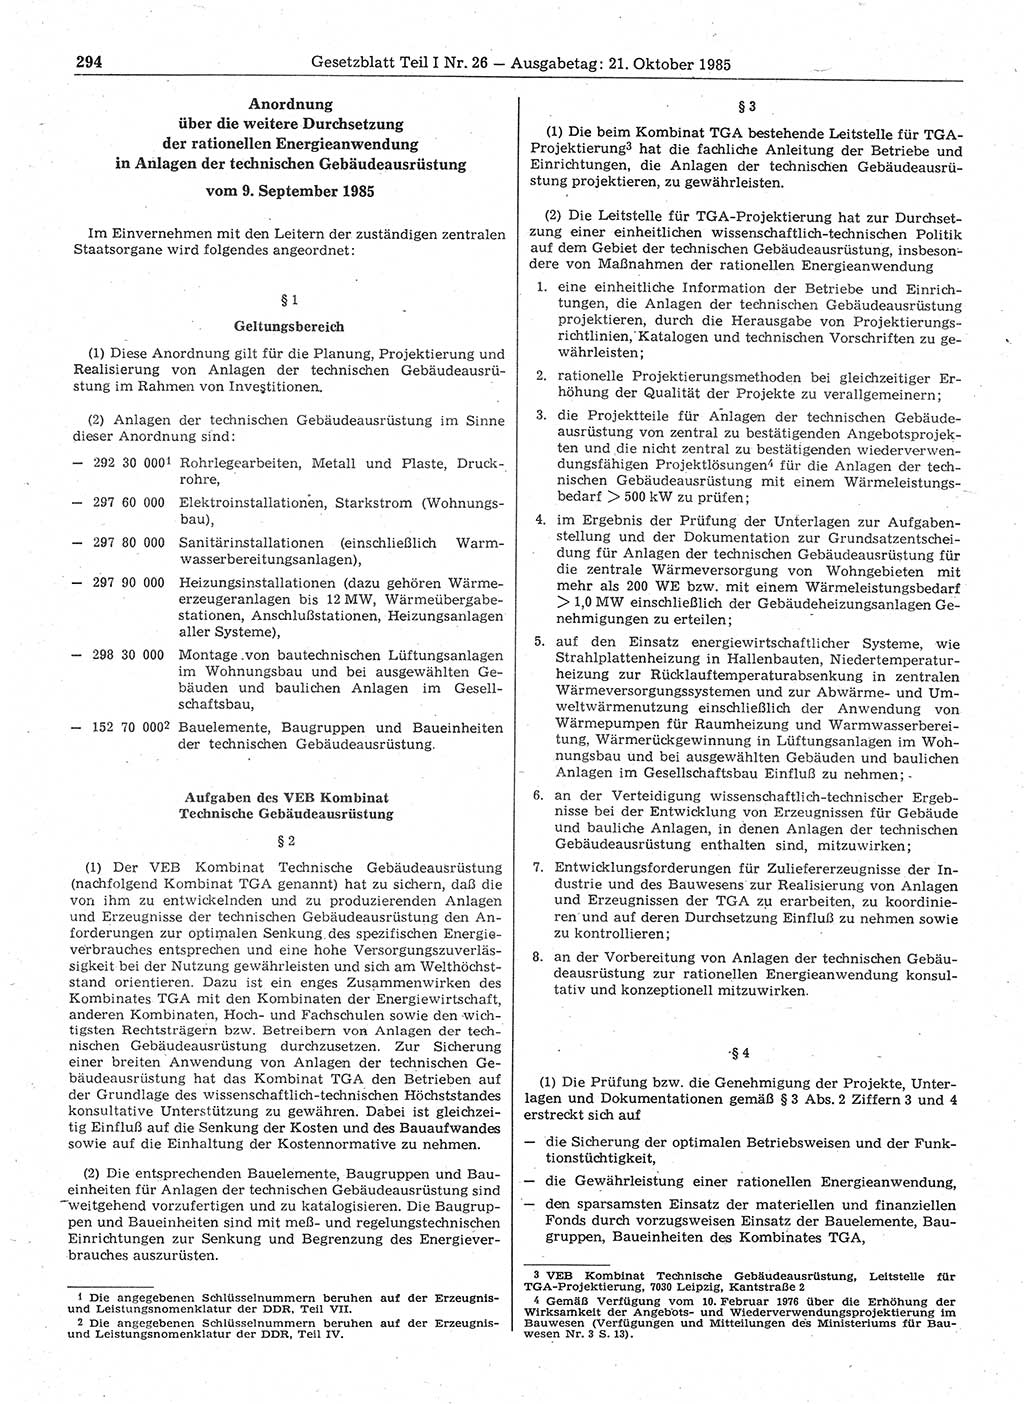 Gesetzblatt (GBl.) der Deutschen Demokratischen Republik (DDR) Teil Ⅰ 1985, Seite 294 (GBl. DDR Ⅰ 1985, S. 294)